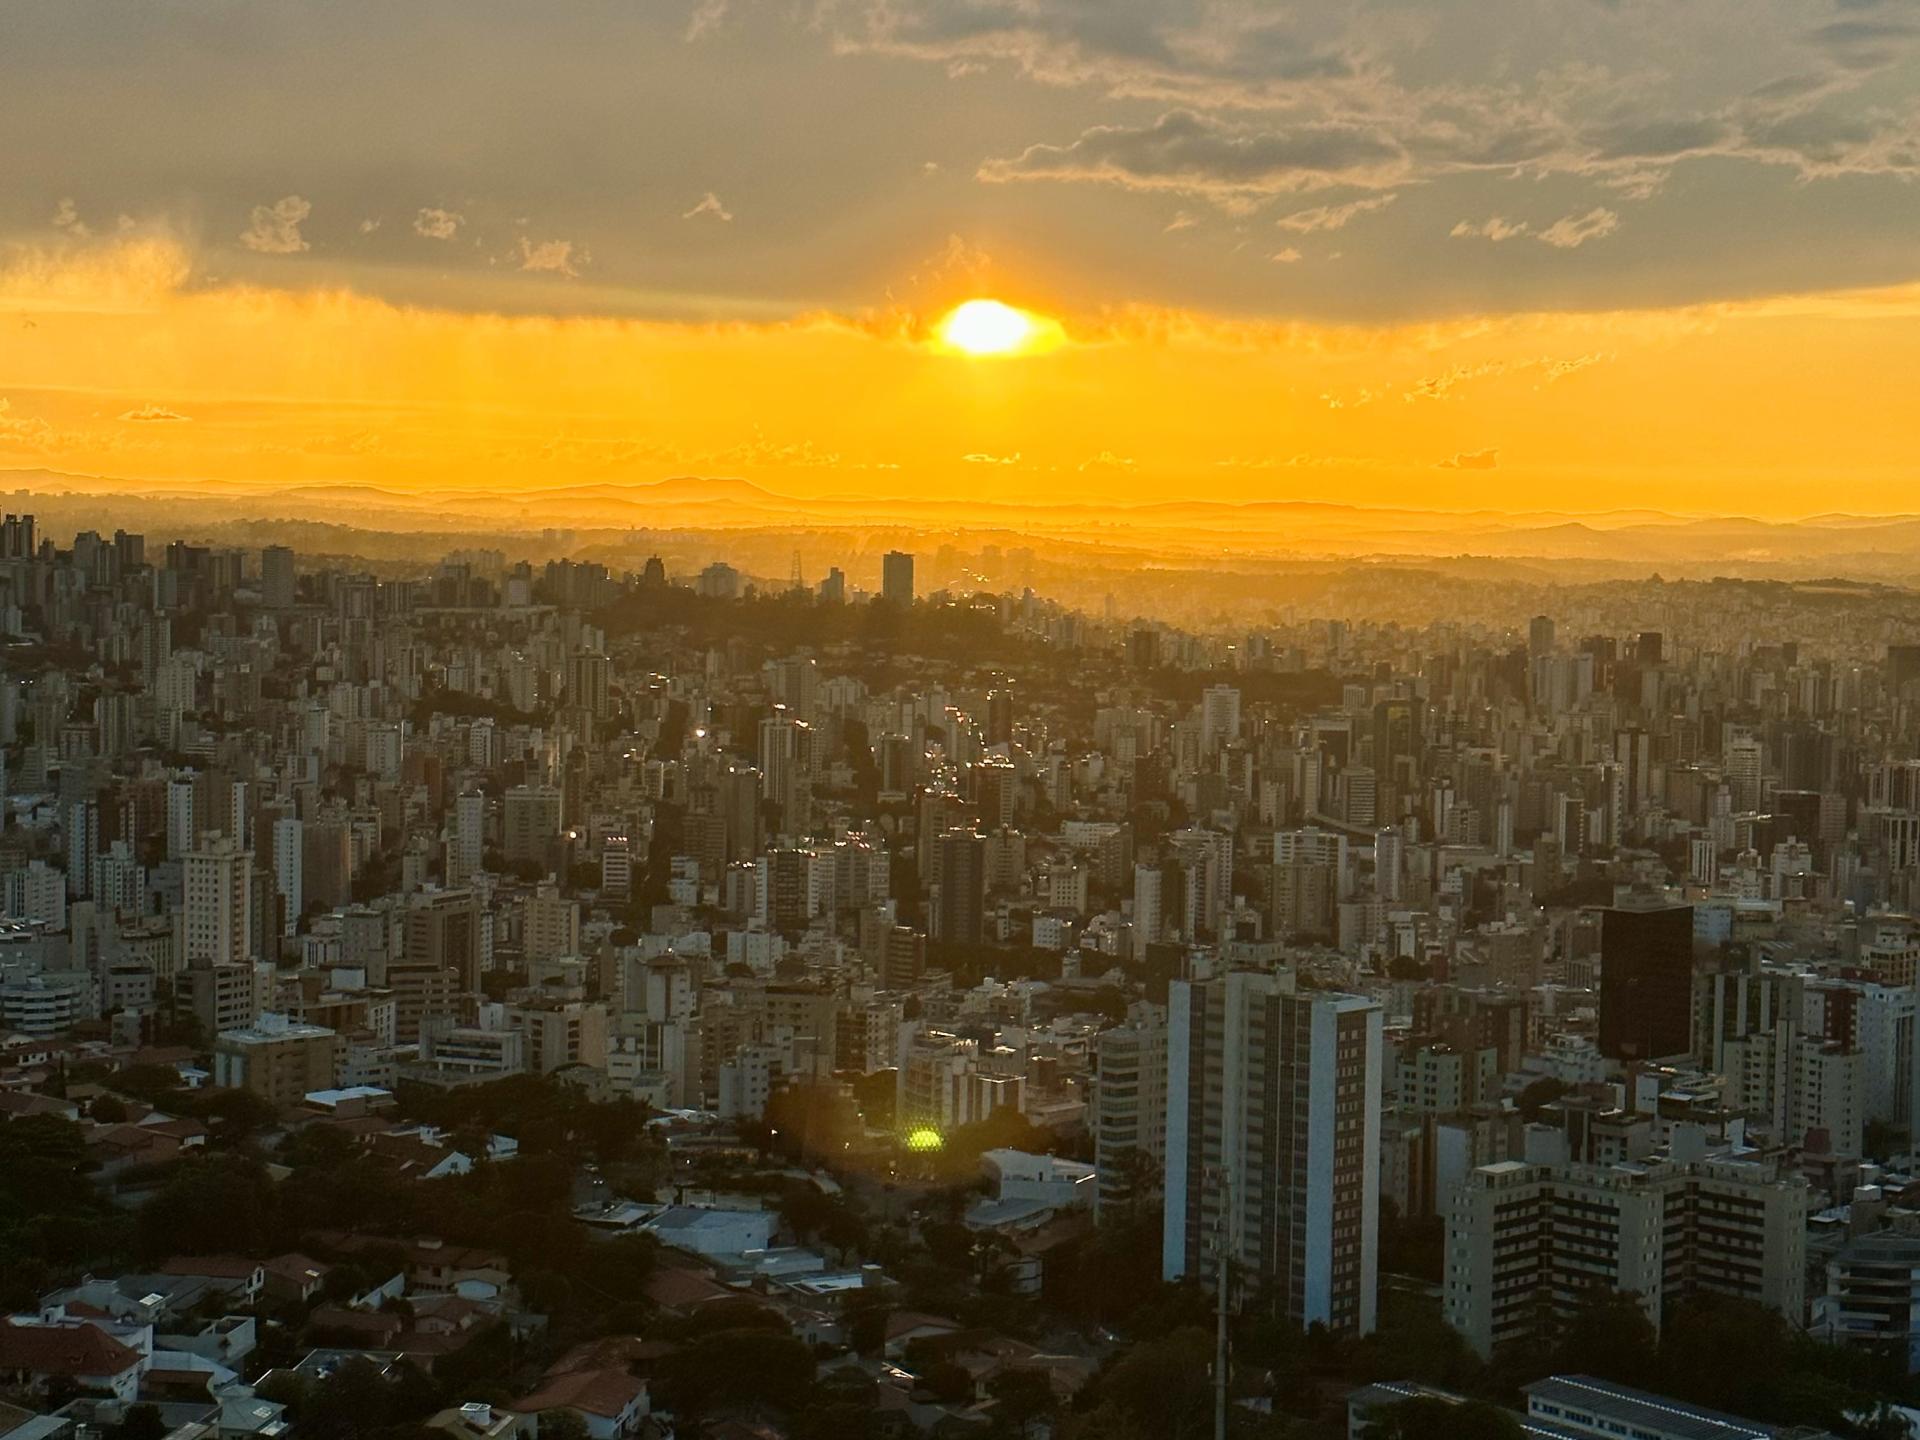 Breathtaking view of Belo Horizonte from Parque Mangabeiras